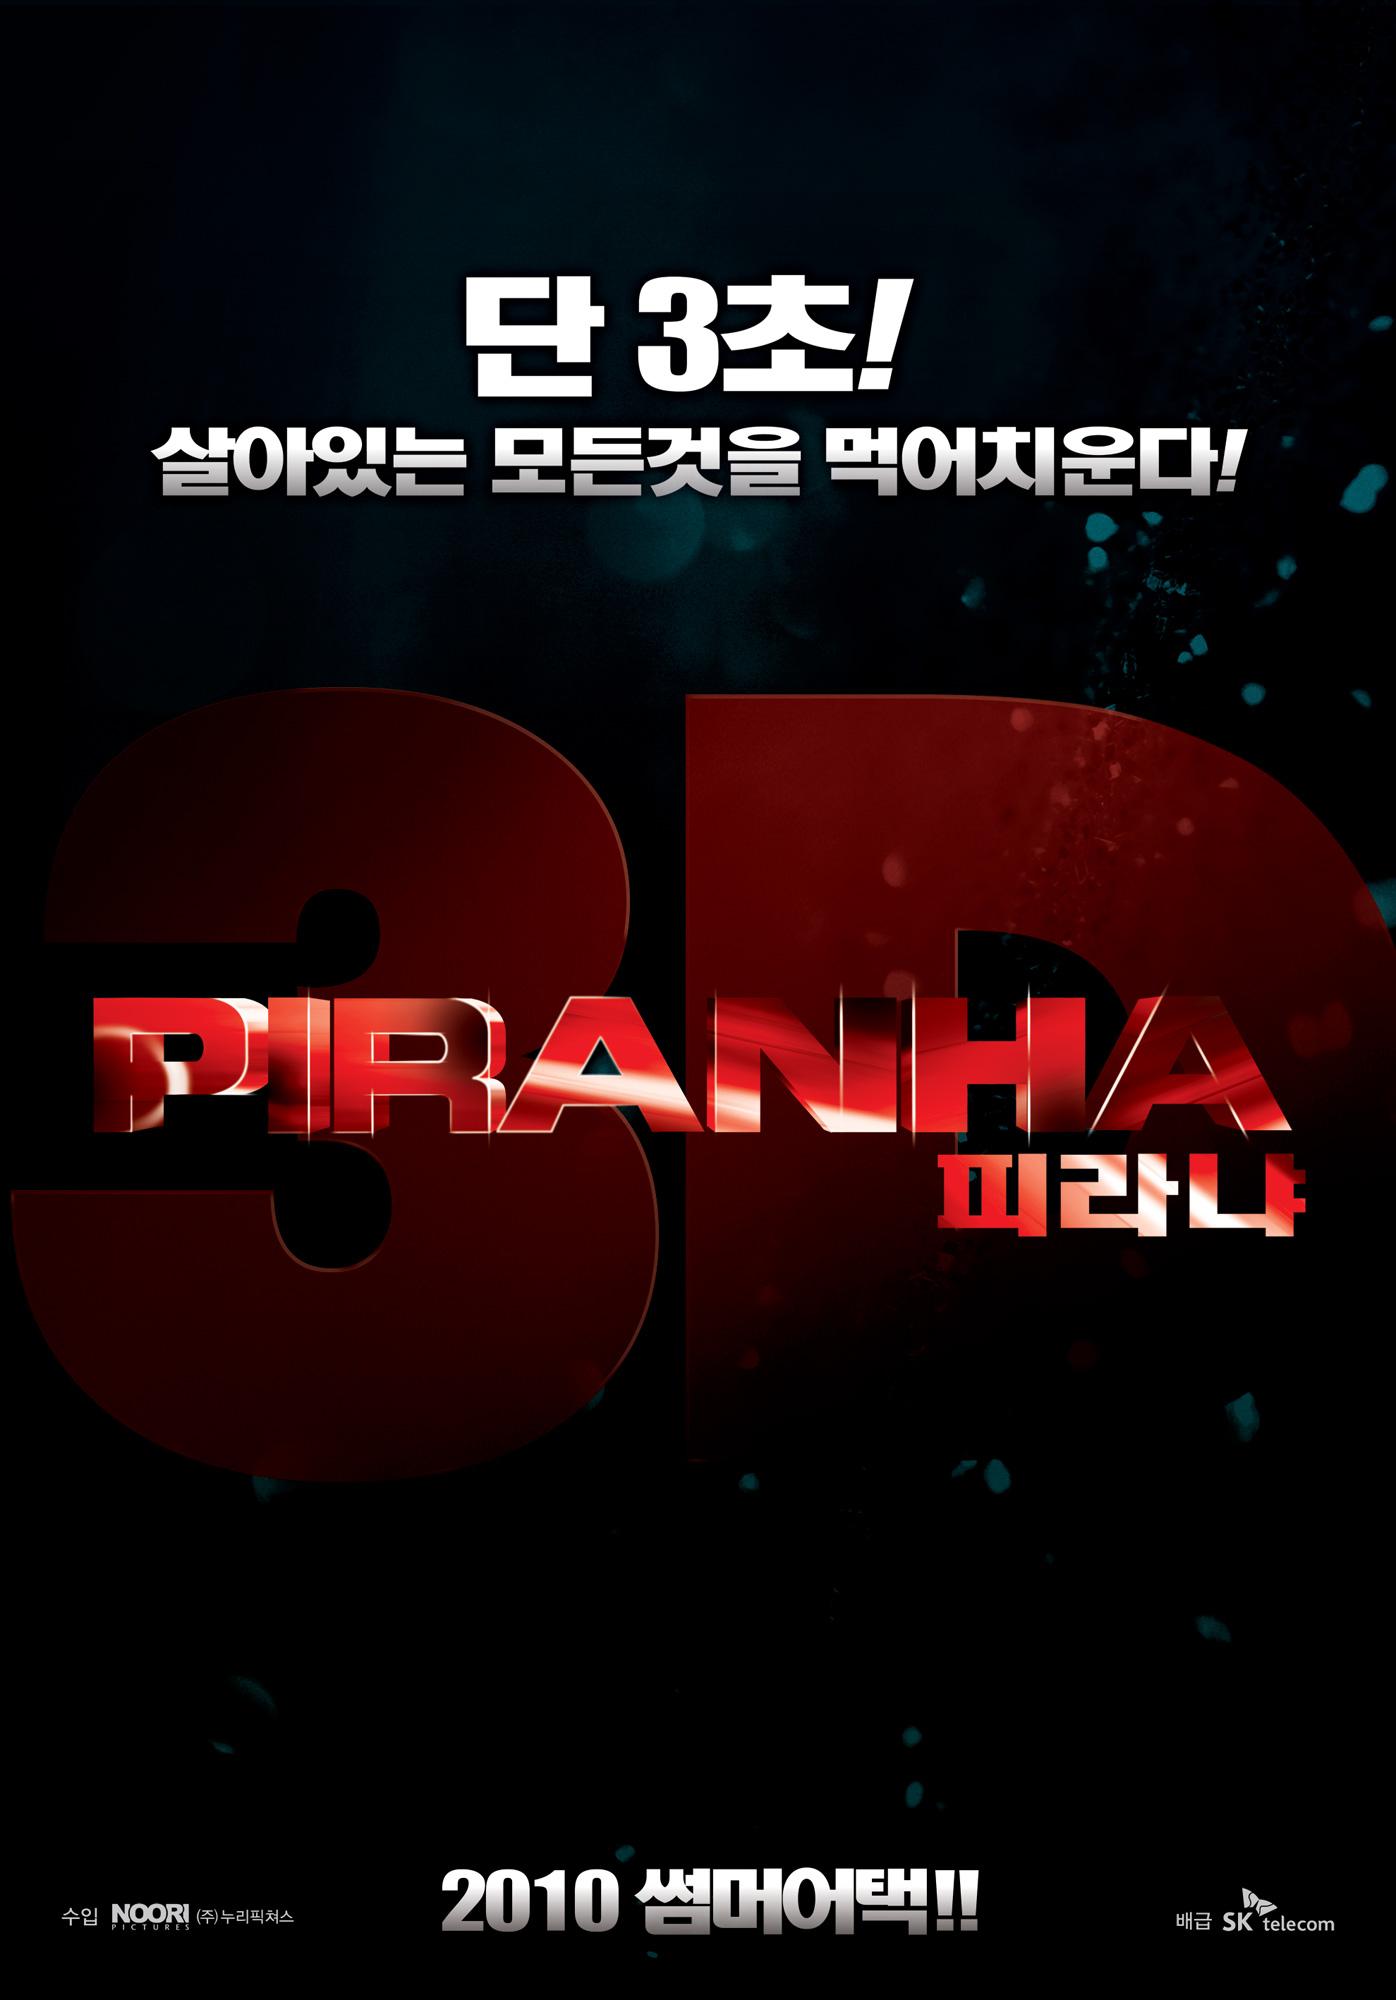 Постер фильма Пираньи 3D | Piranha 3D